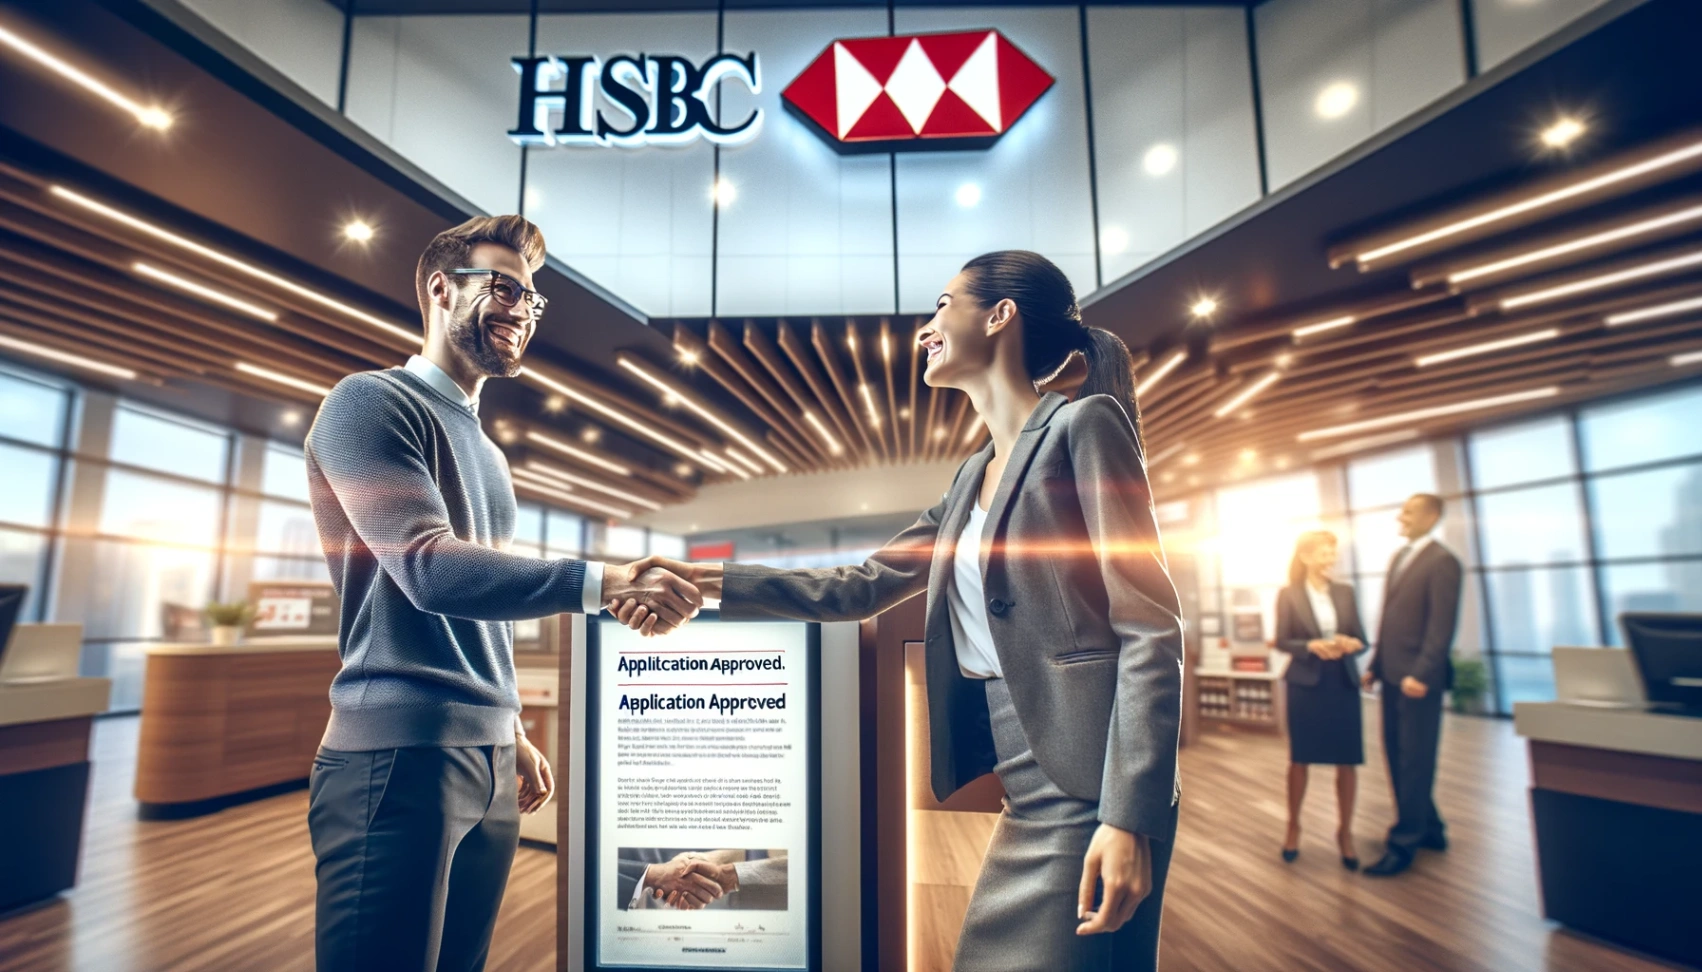 Obtenir un prêt professionnel à HSBC France : un guide complet 